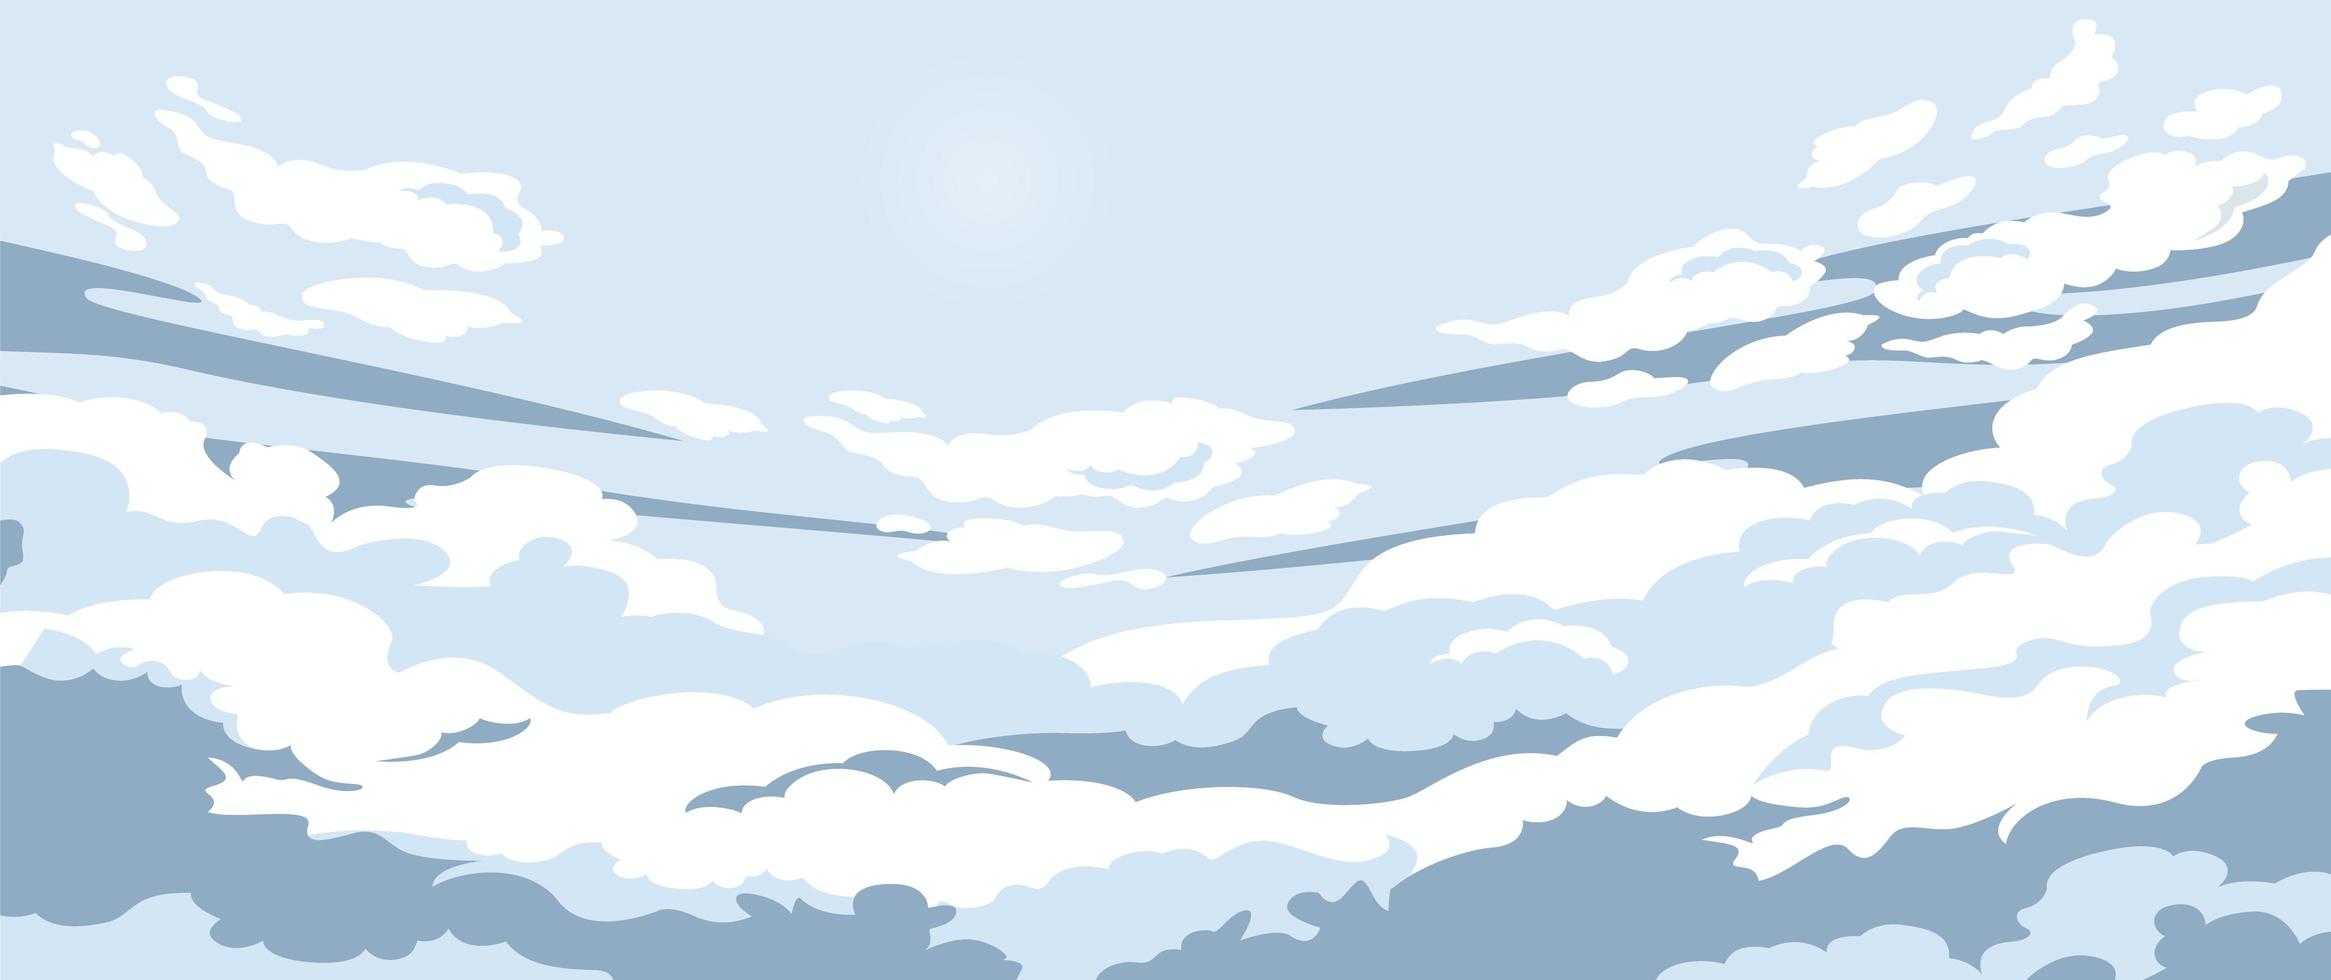 nuvole sul cielo blu vettore